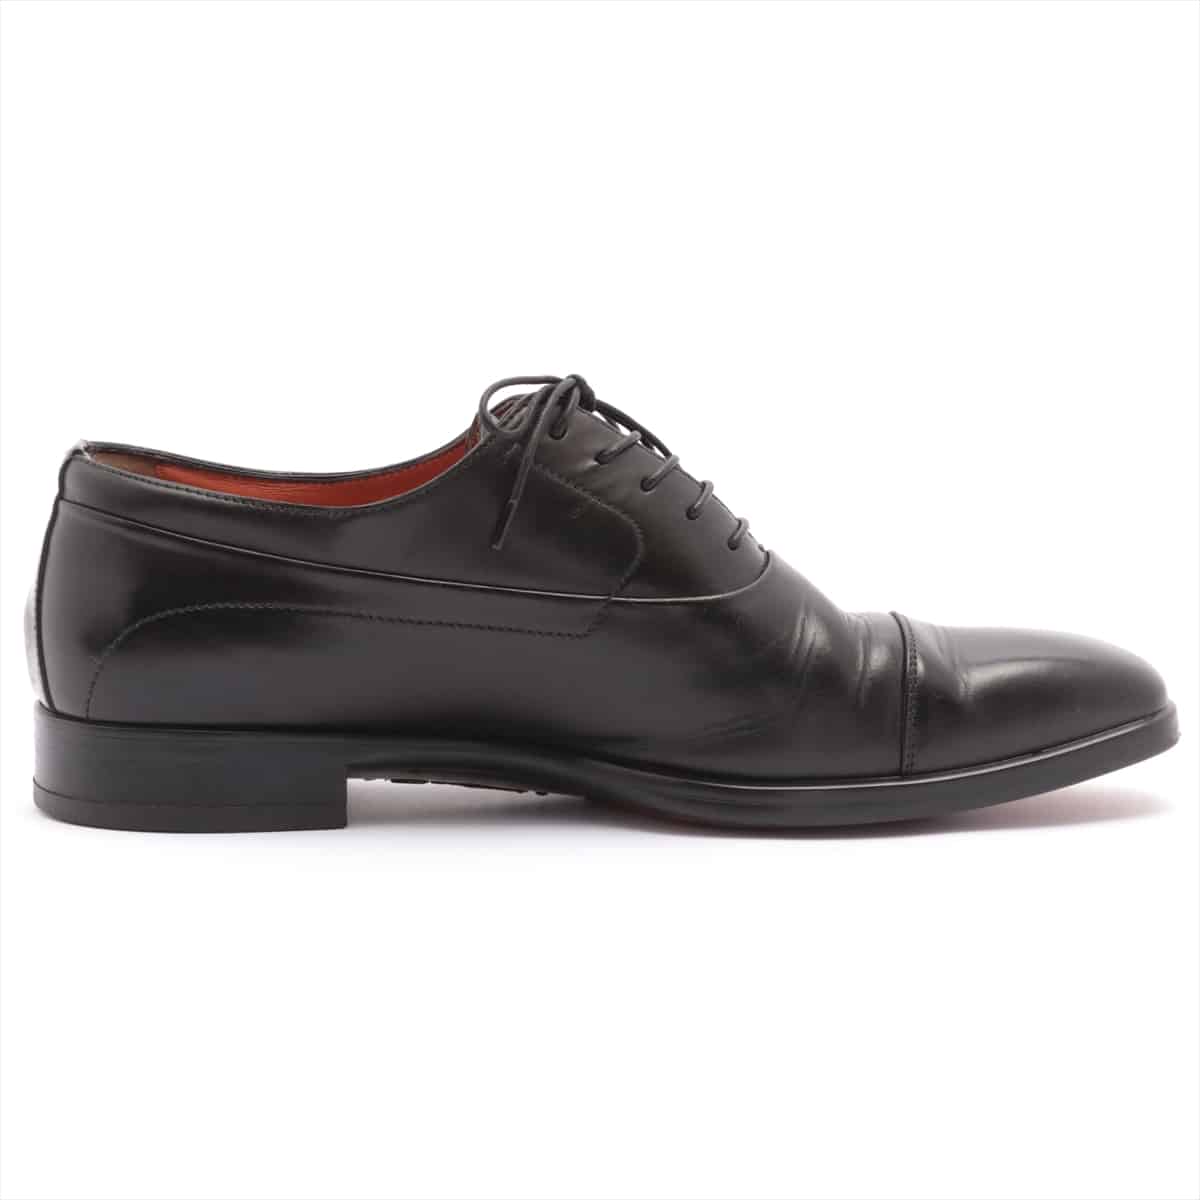 Santoni Leather Leather shoes 6 Men's Black